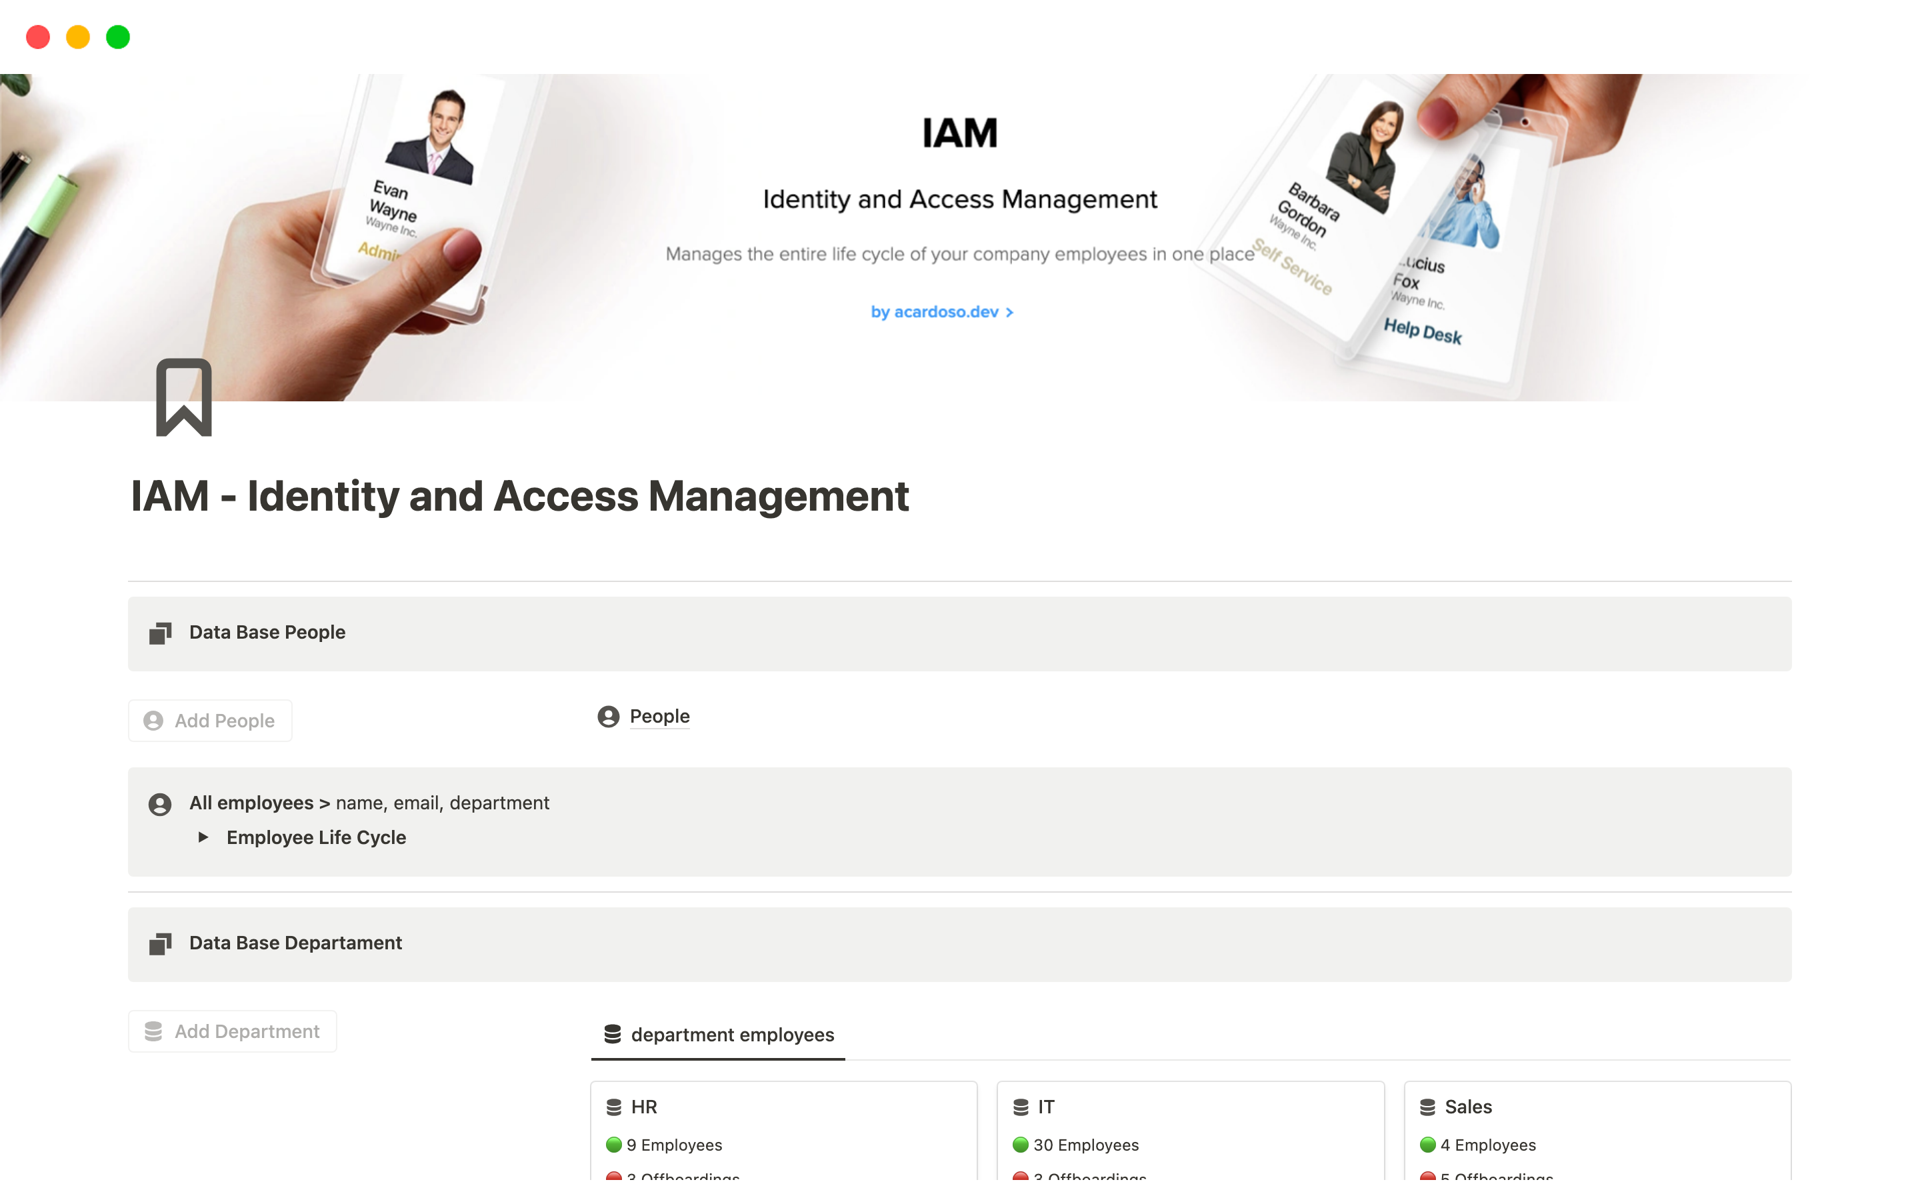 En förhandsgranskning av mallen för IAM - Identity and Access Management